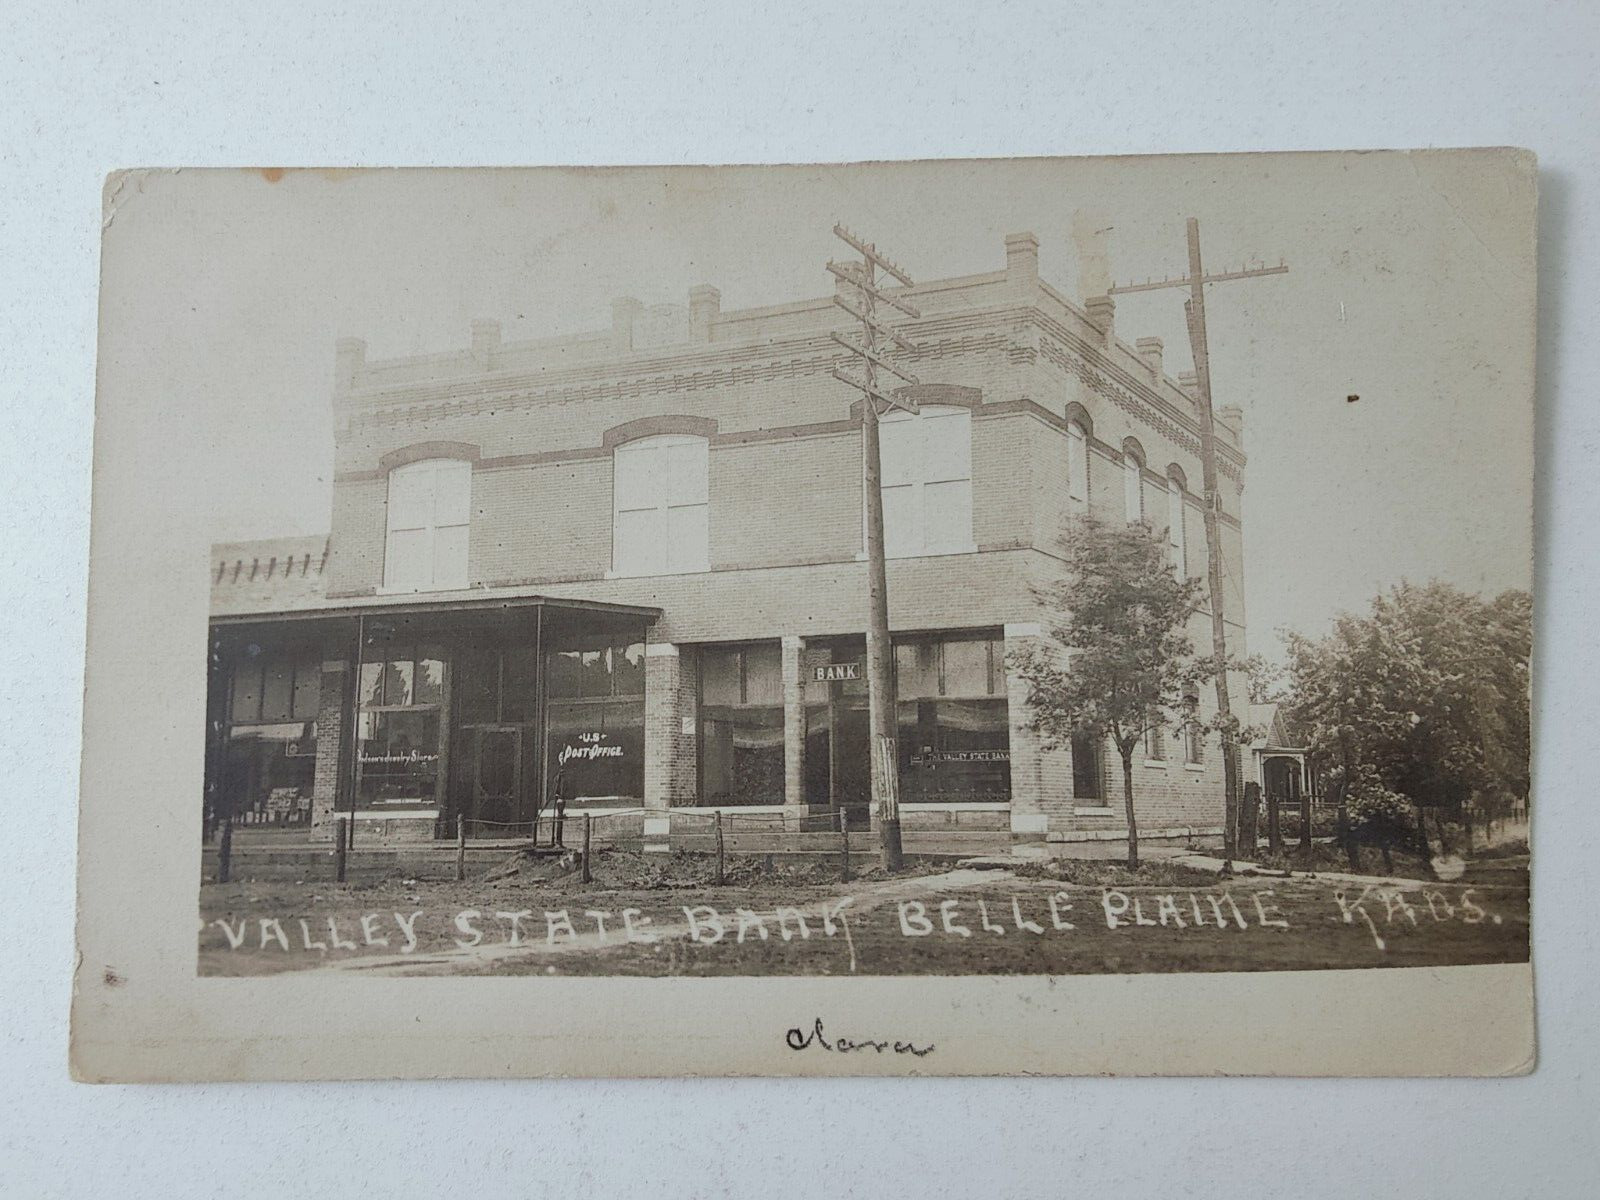 Vintage Souvenir Postcard Valley State Bank Belle Plaine KS Postmarked Ks